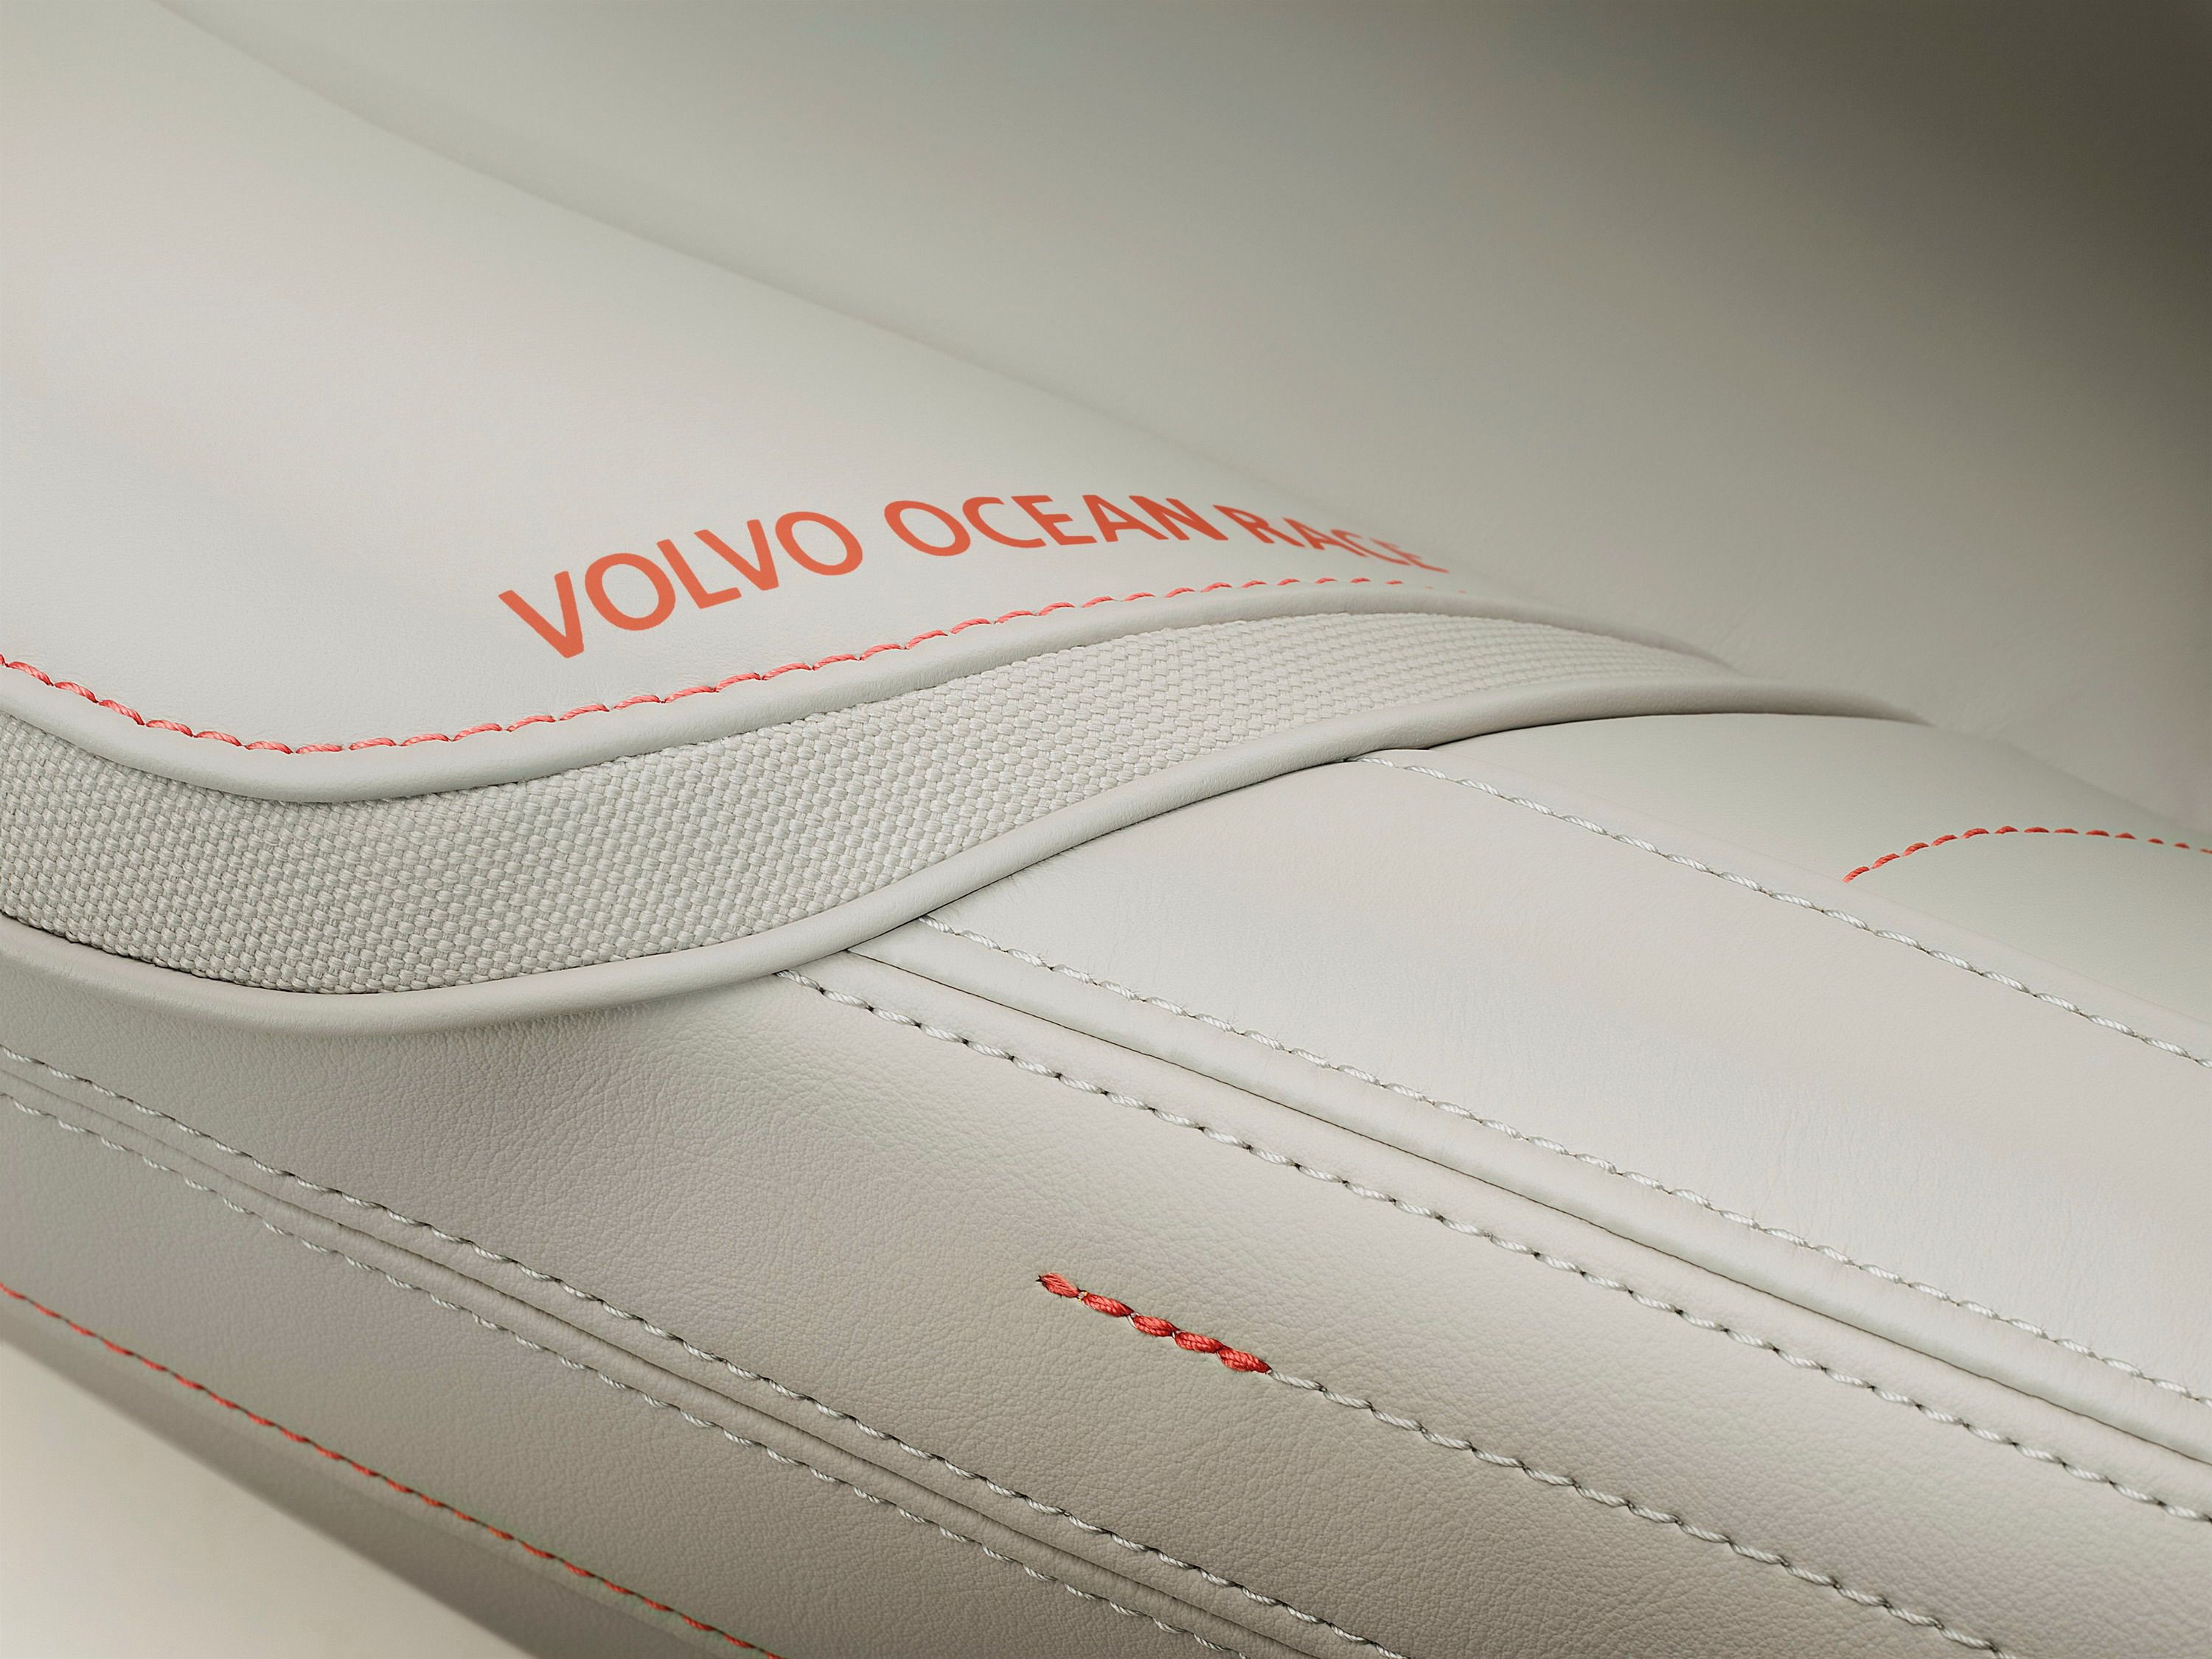 2014 Volvo Ocean Race Edition